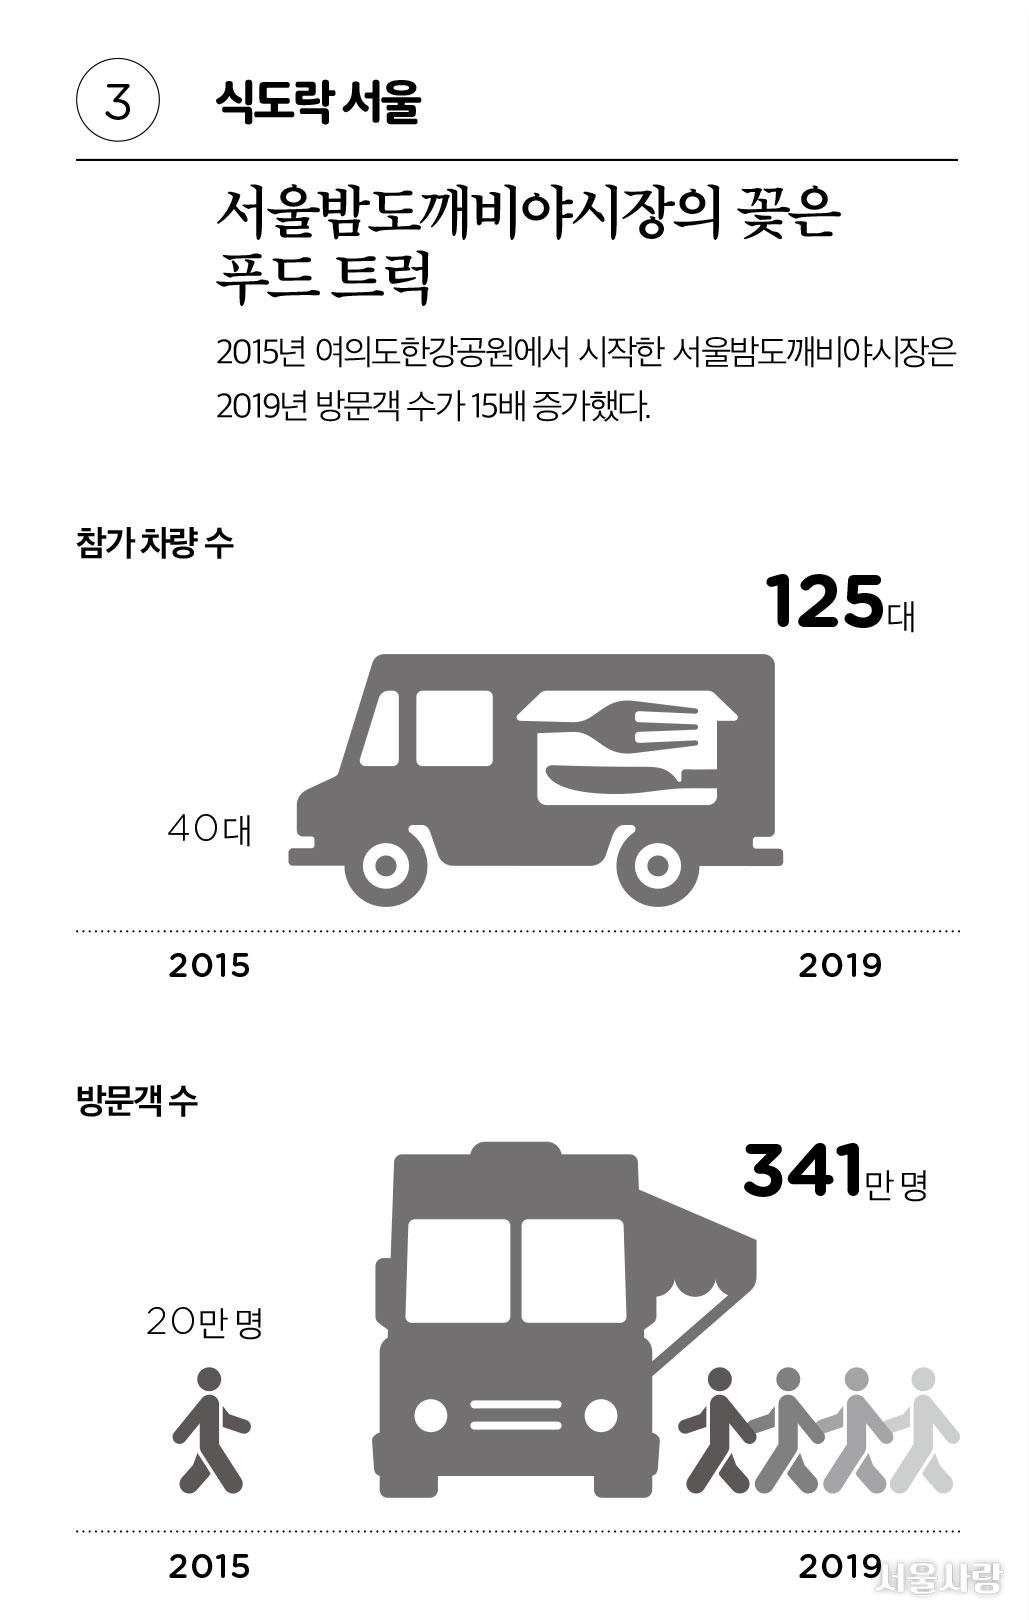 통계로 보는 서울 10년